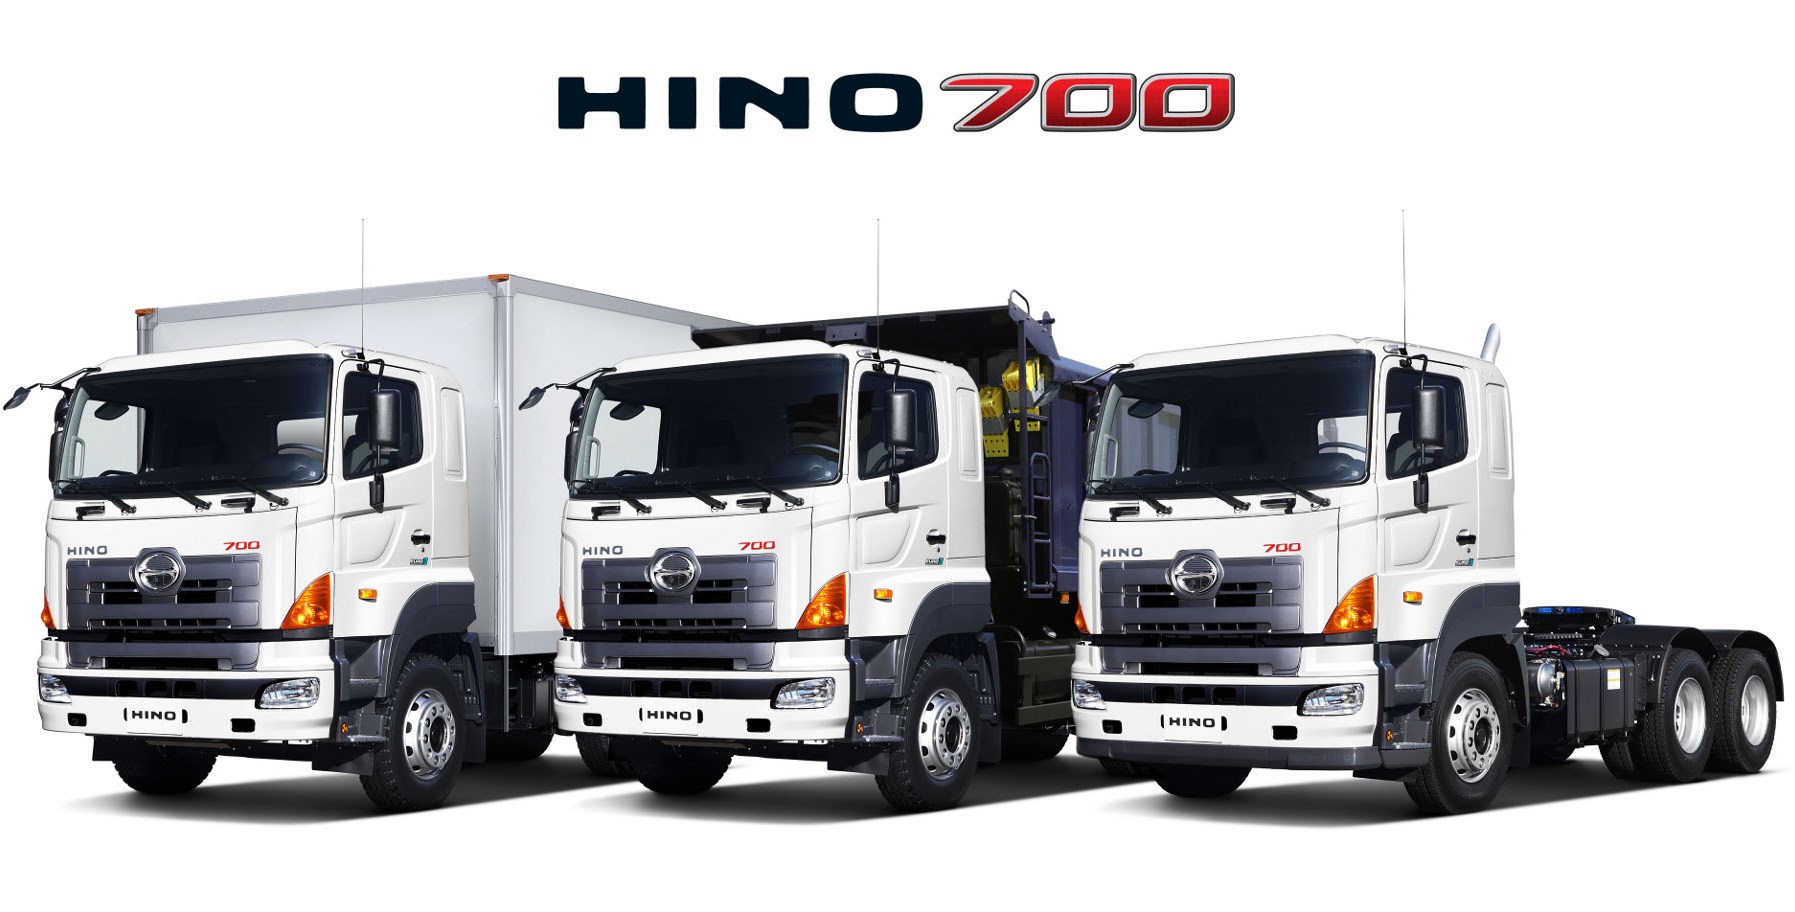 HINO 700